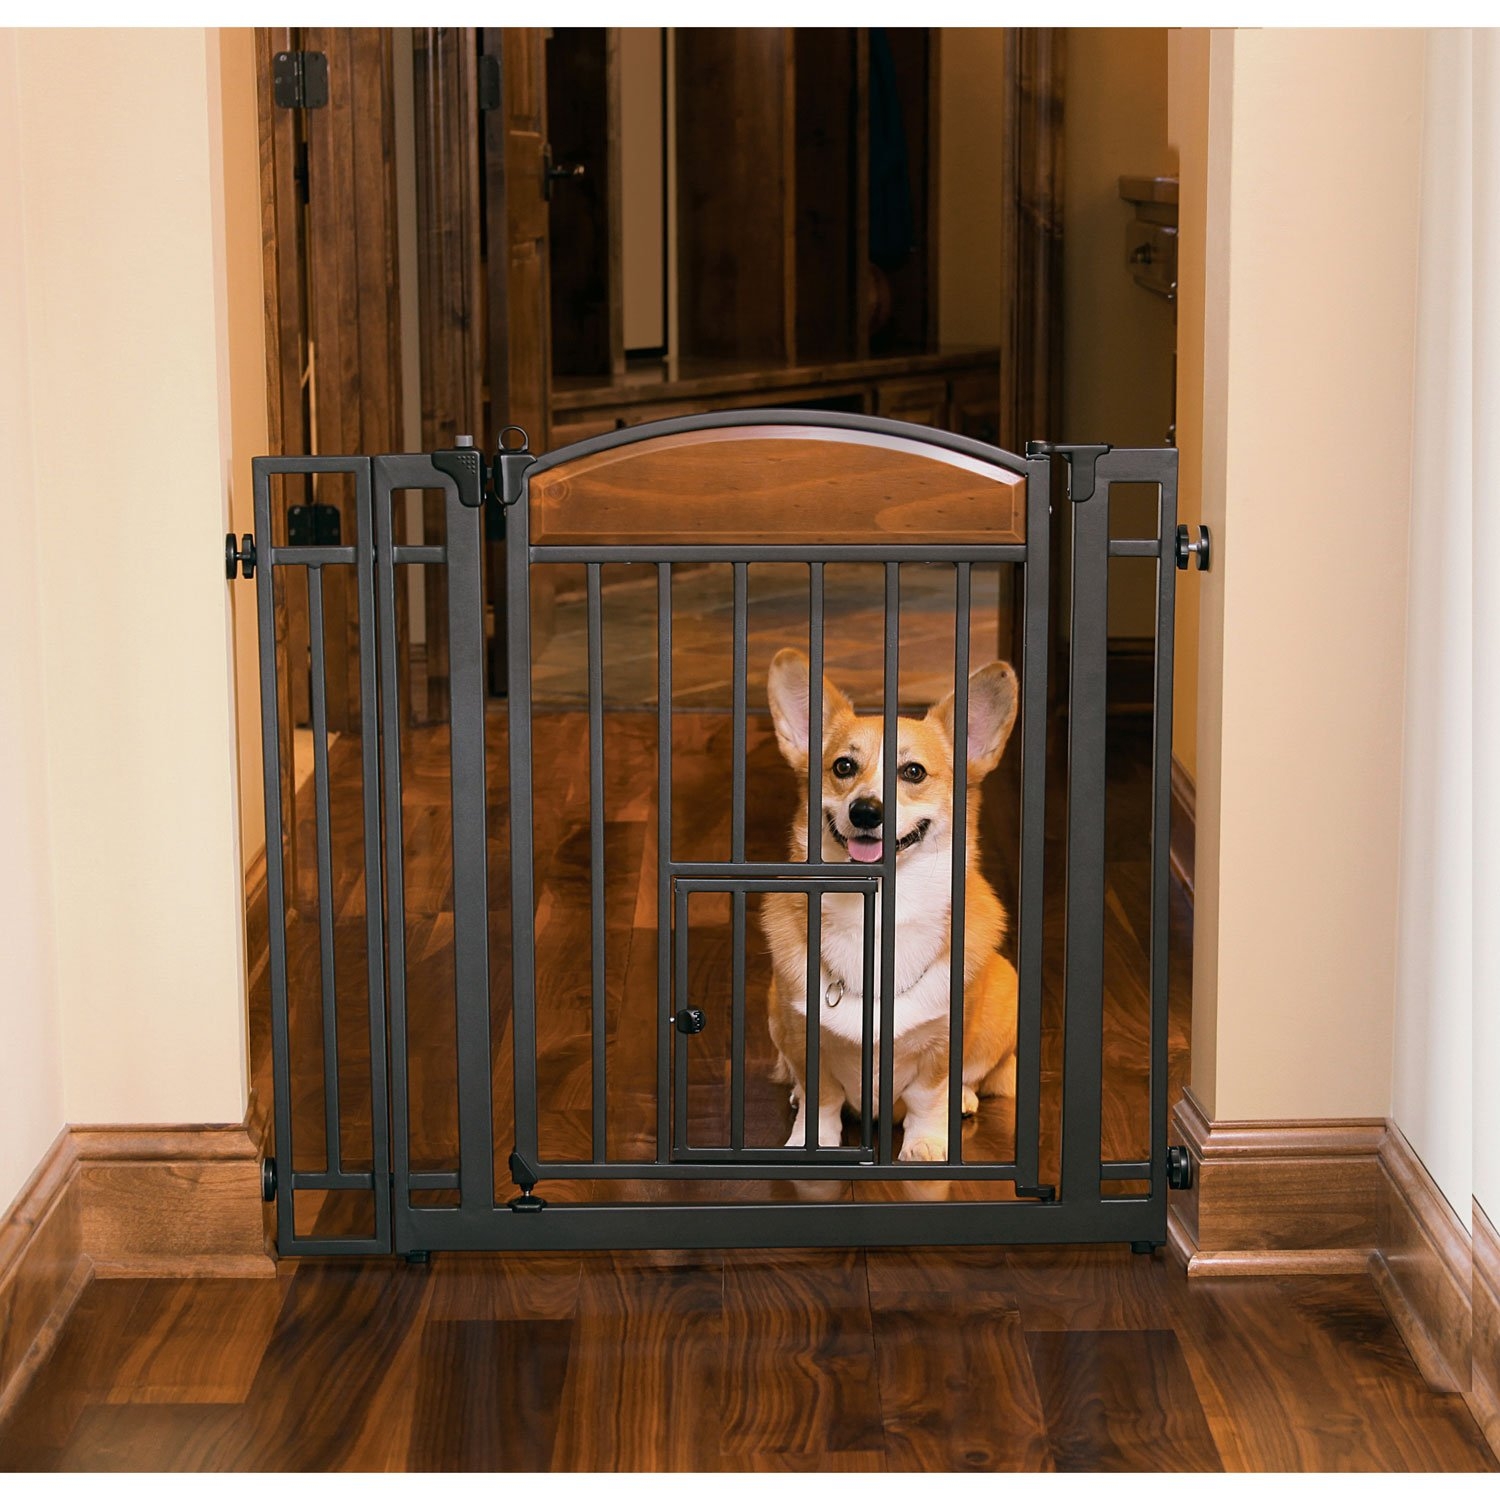 walk through baby gate with pet door